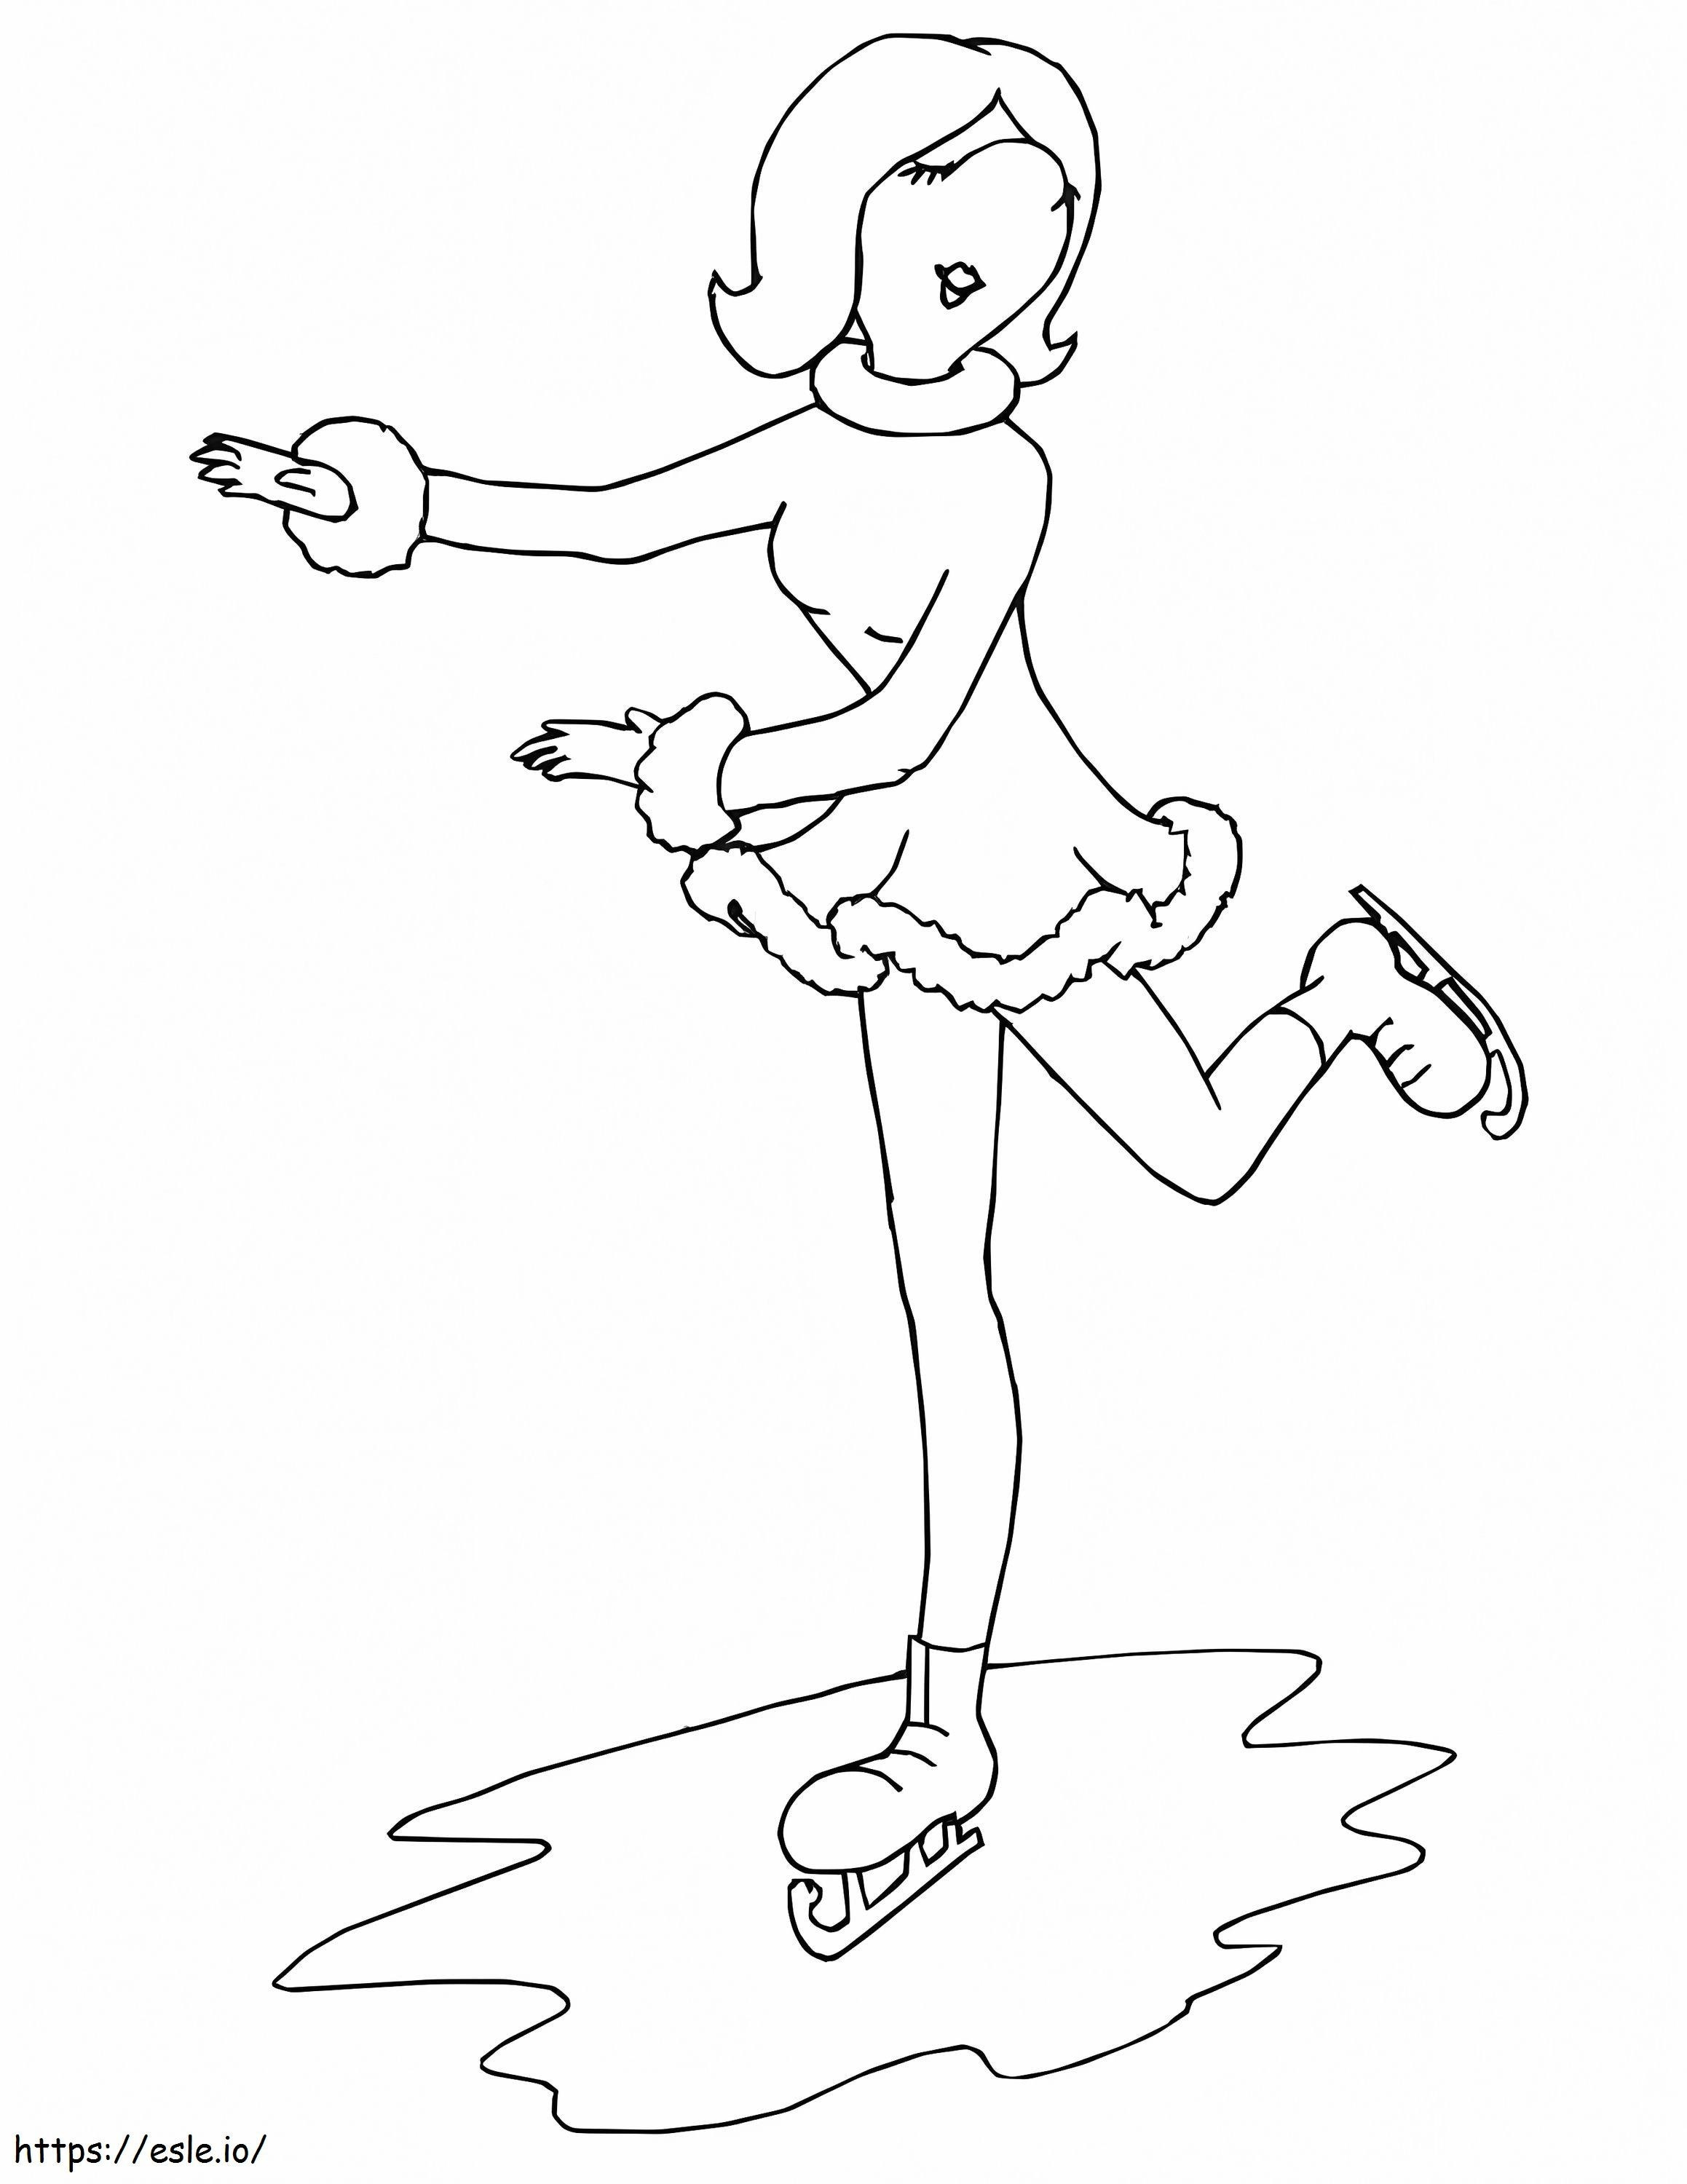 Profilo di pattinaggio su ghiaccio della ragazza da colorare